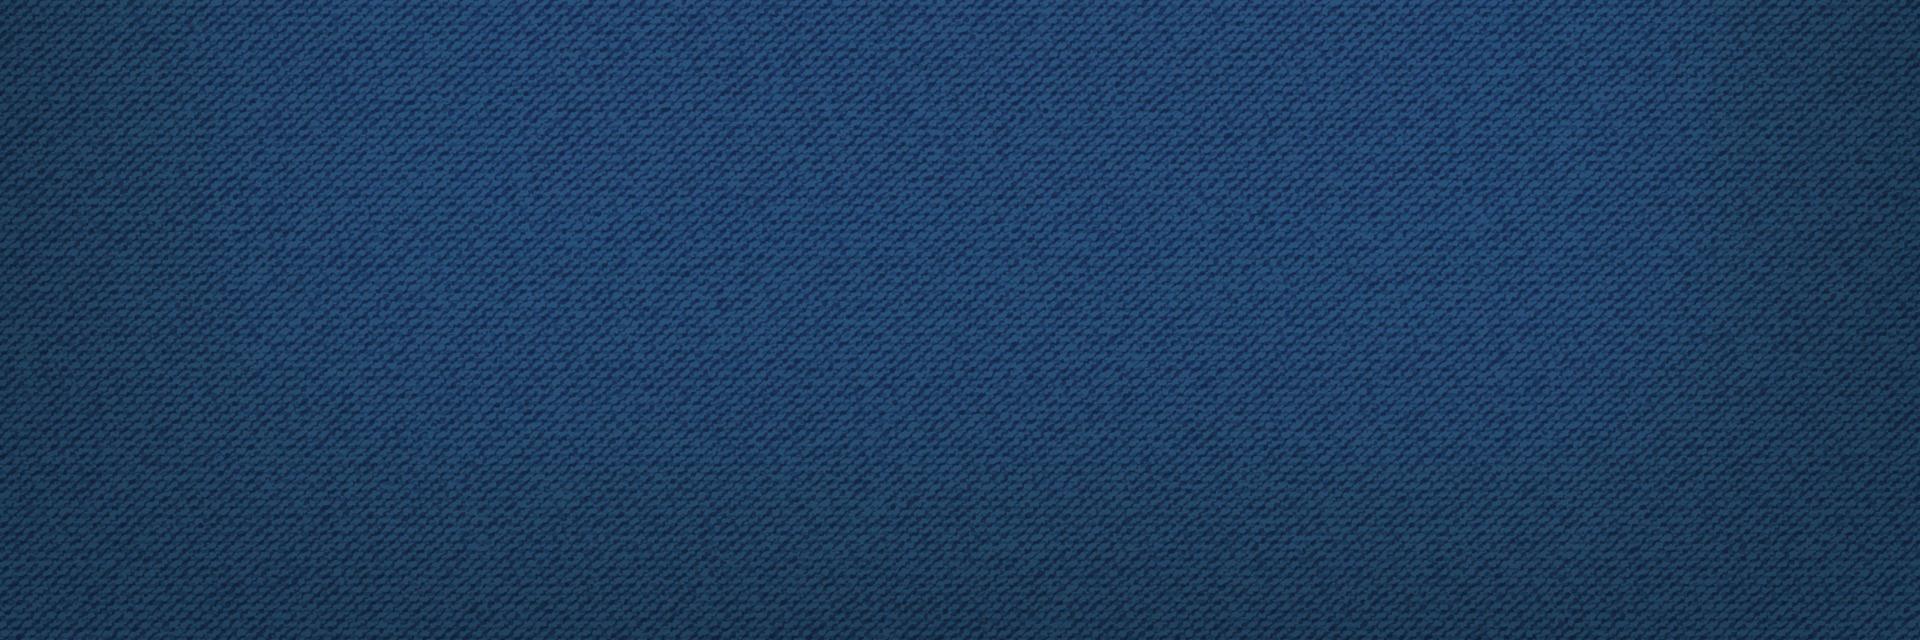 Blue classic jeans denim texture. Light jeans texture. Realistic vector illustration